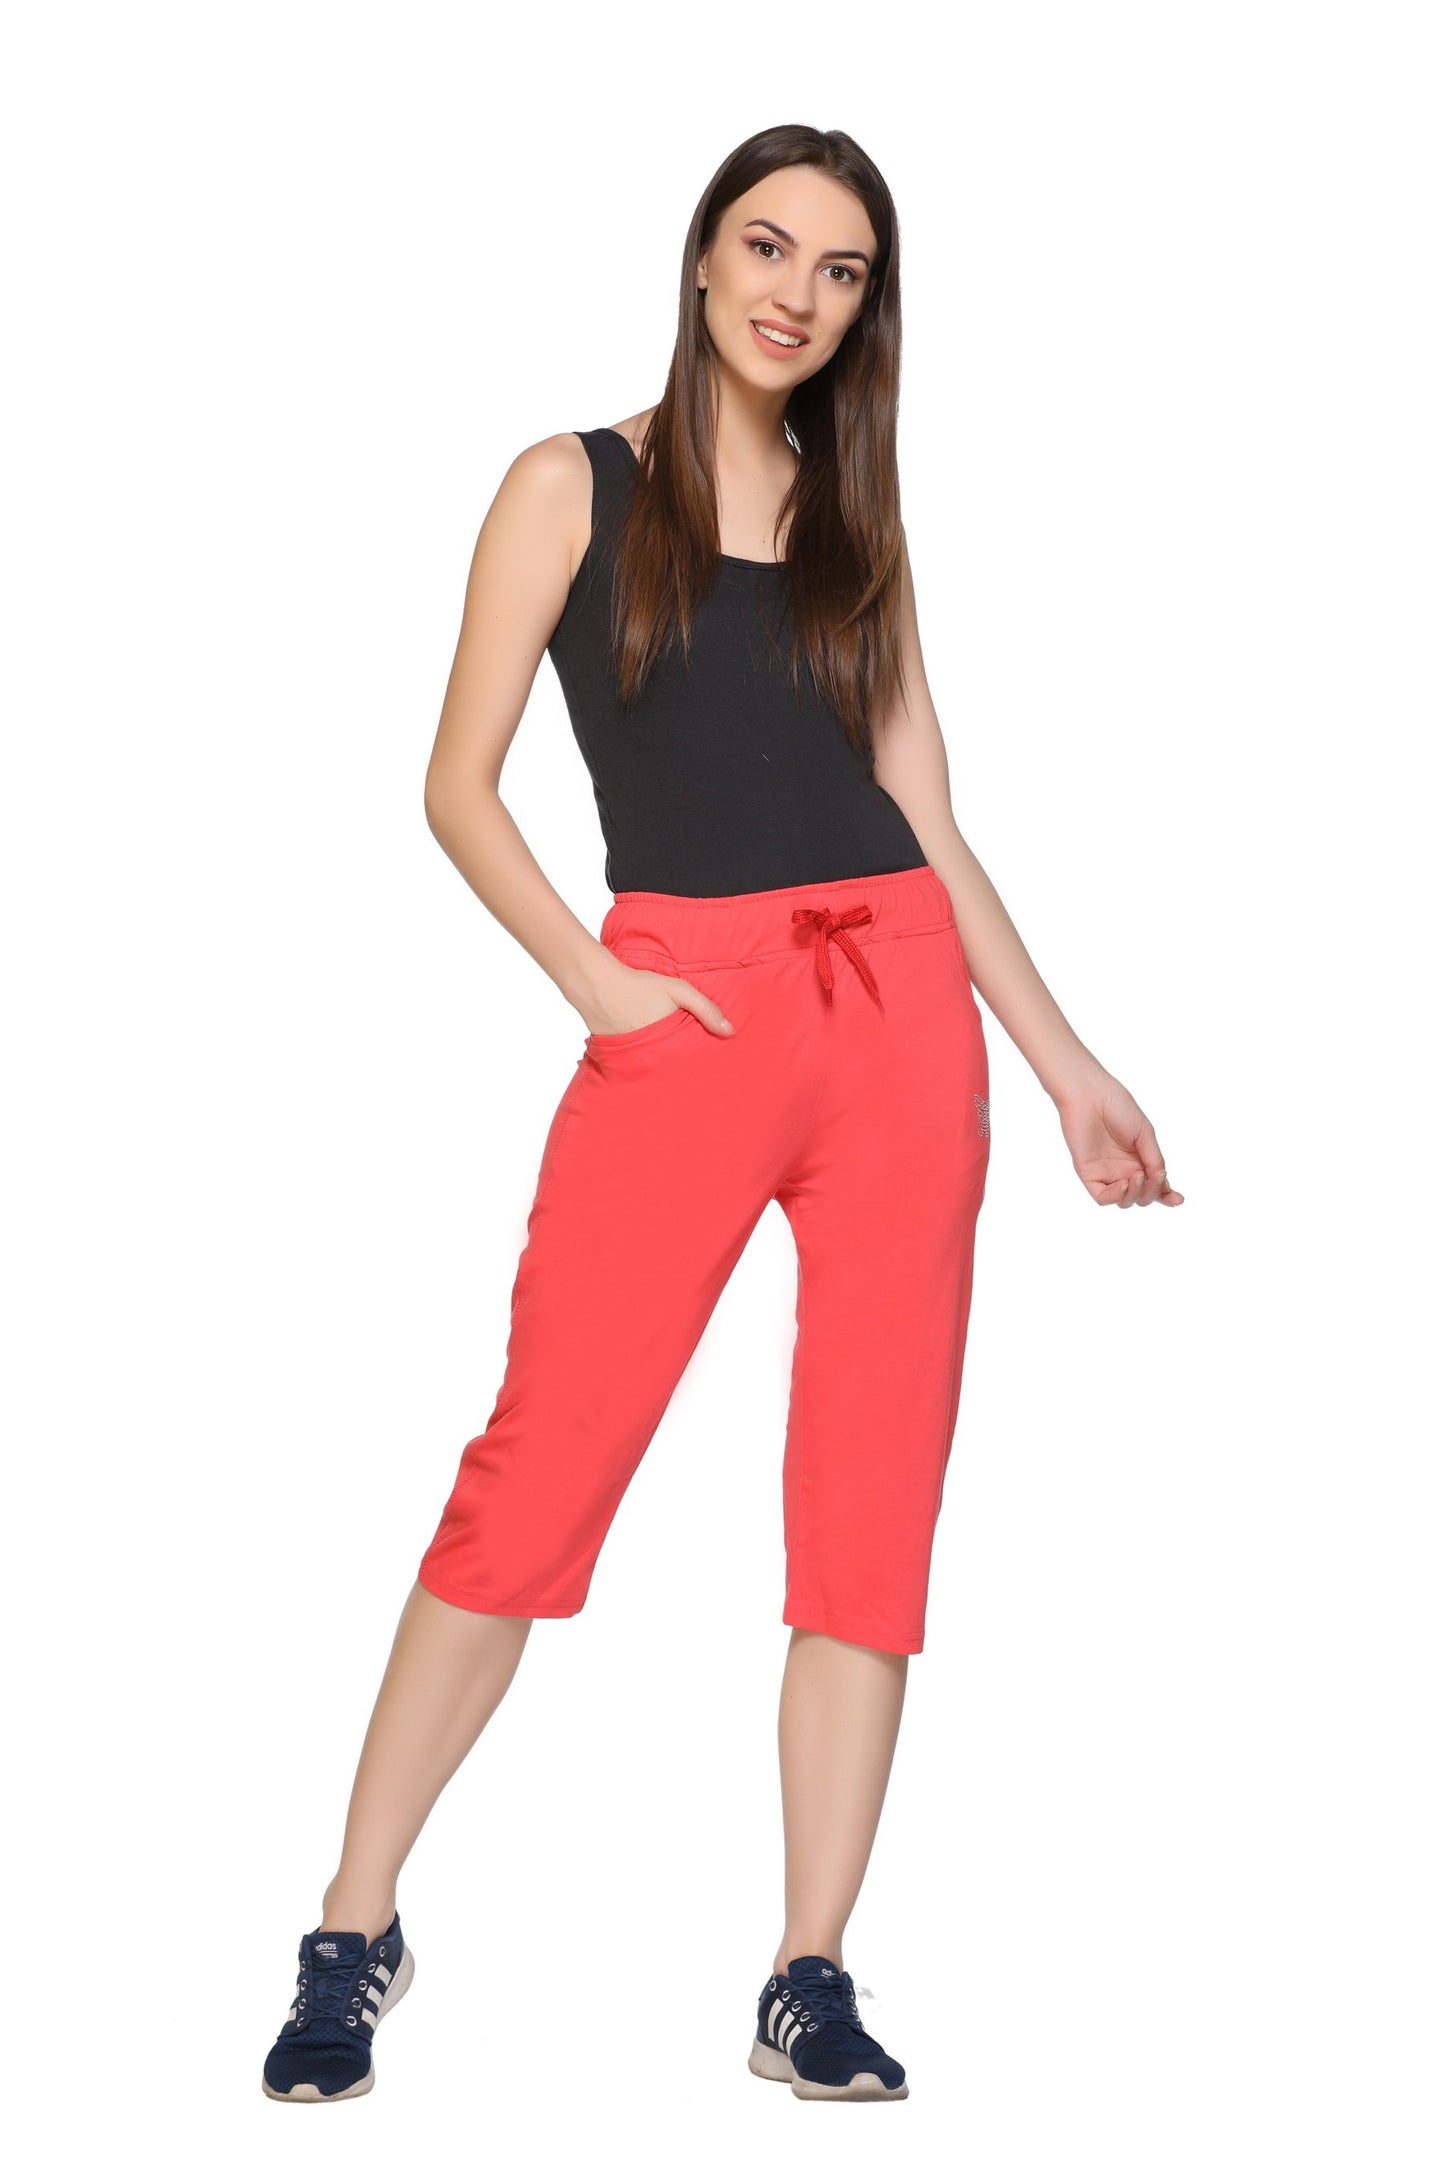 Plus Size Capris For Women - Cotton Capri Pants - Red